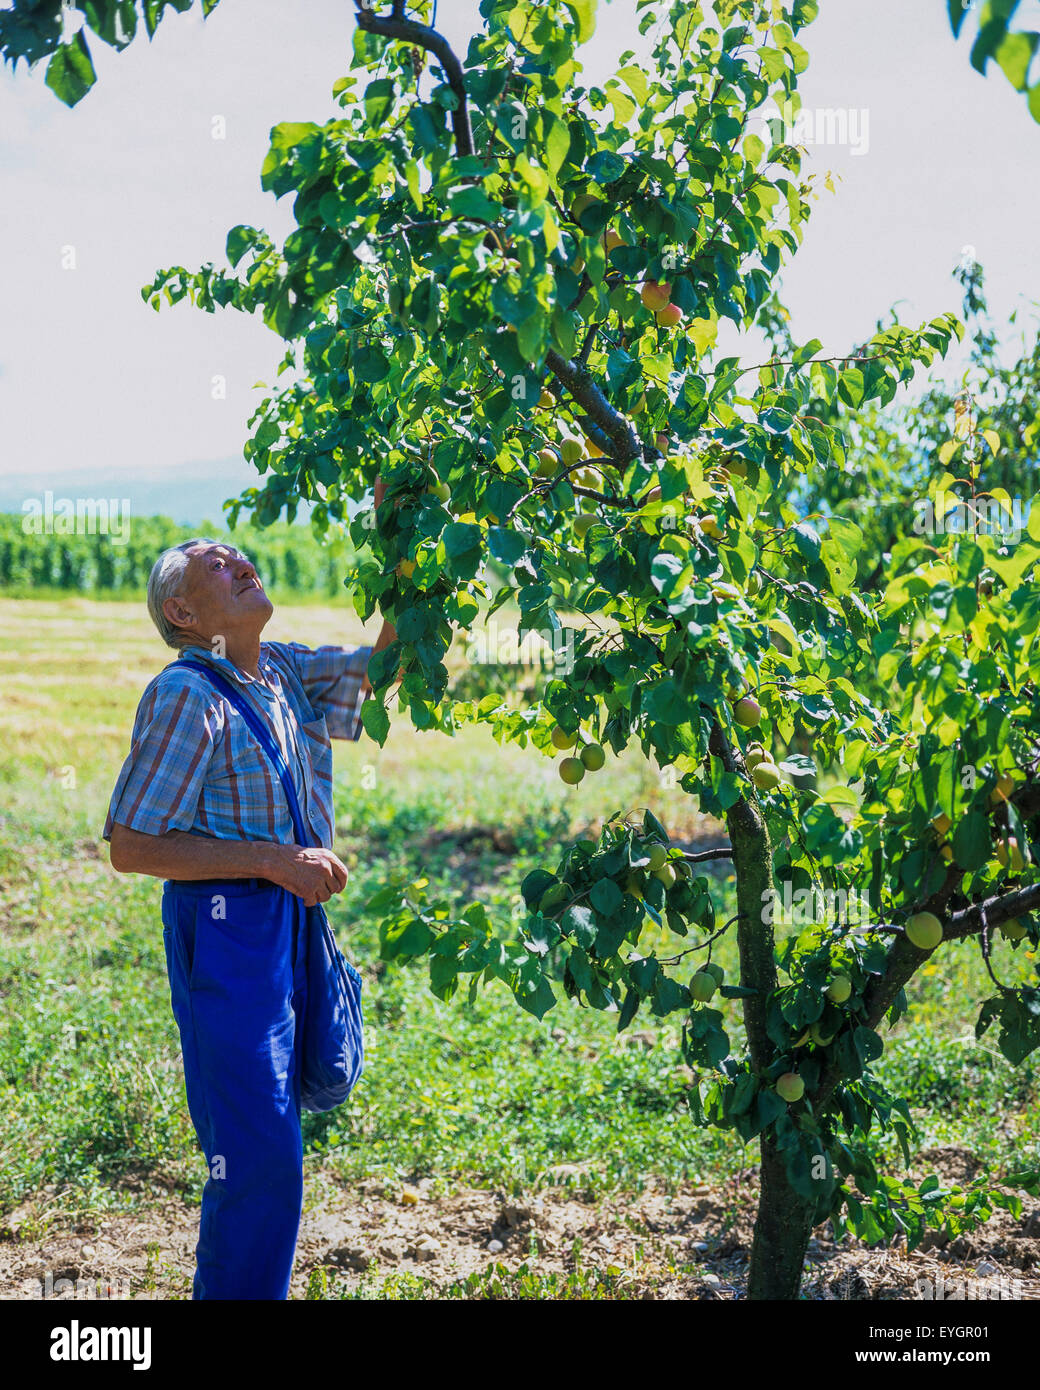 Un homme âgé de la récolte d'abricots arbre en verger, Drôme, vallée du Rhône, France, Europe Banque D'Images